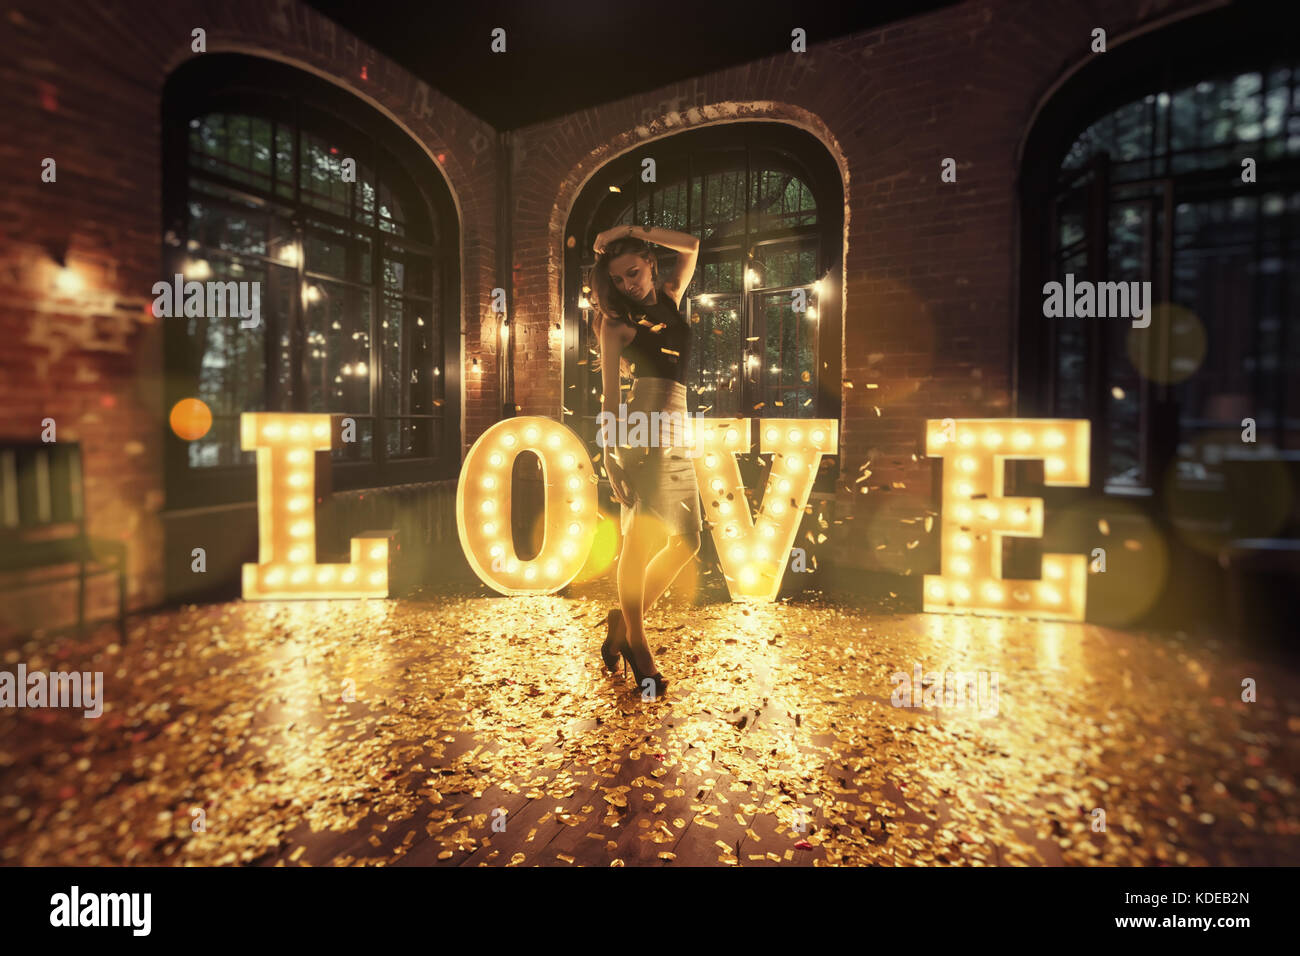 Schöne Mädchen vor dem Hintergrund der glänzenden Buchstaben posieren. Aus den Buchstaben das Wort "Liebe" besteht. goldenen Blütenblätter sind verstreut auf dem Boden. Stockfoto